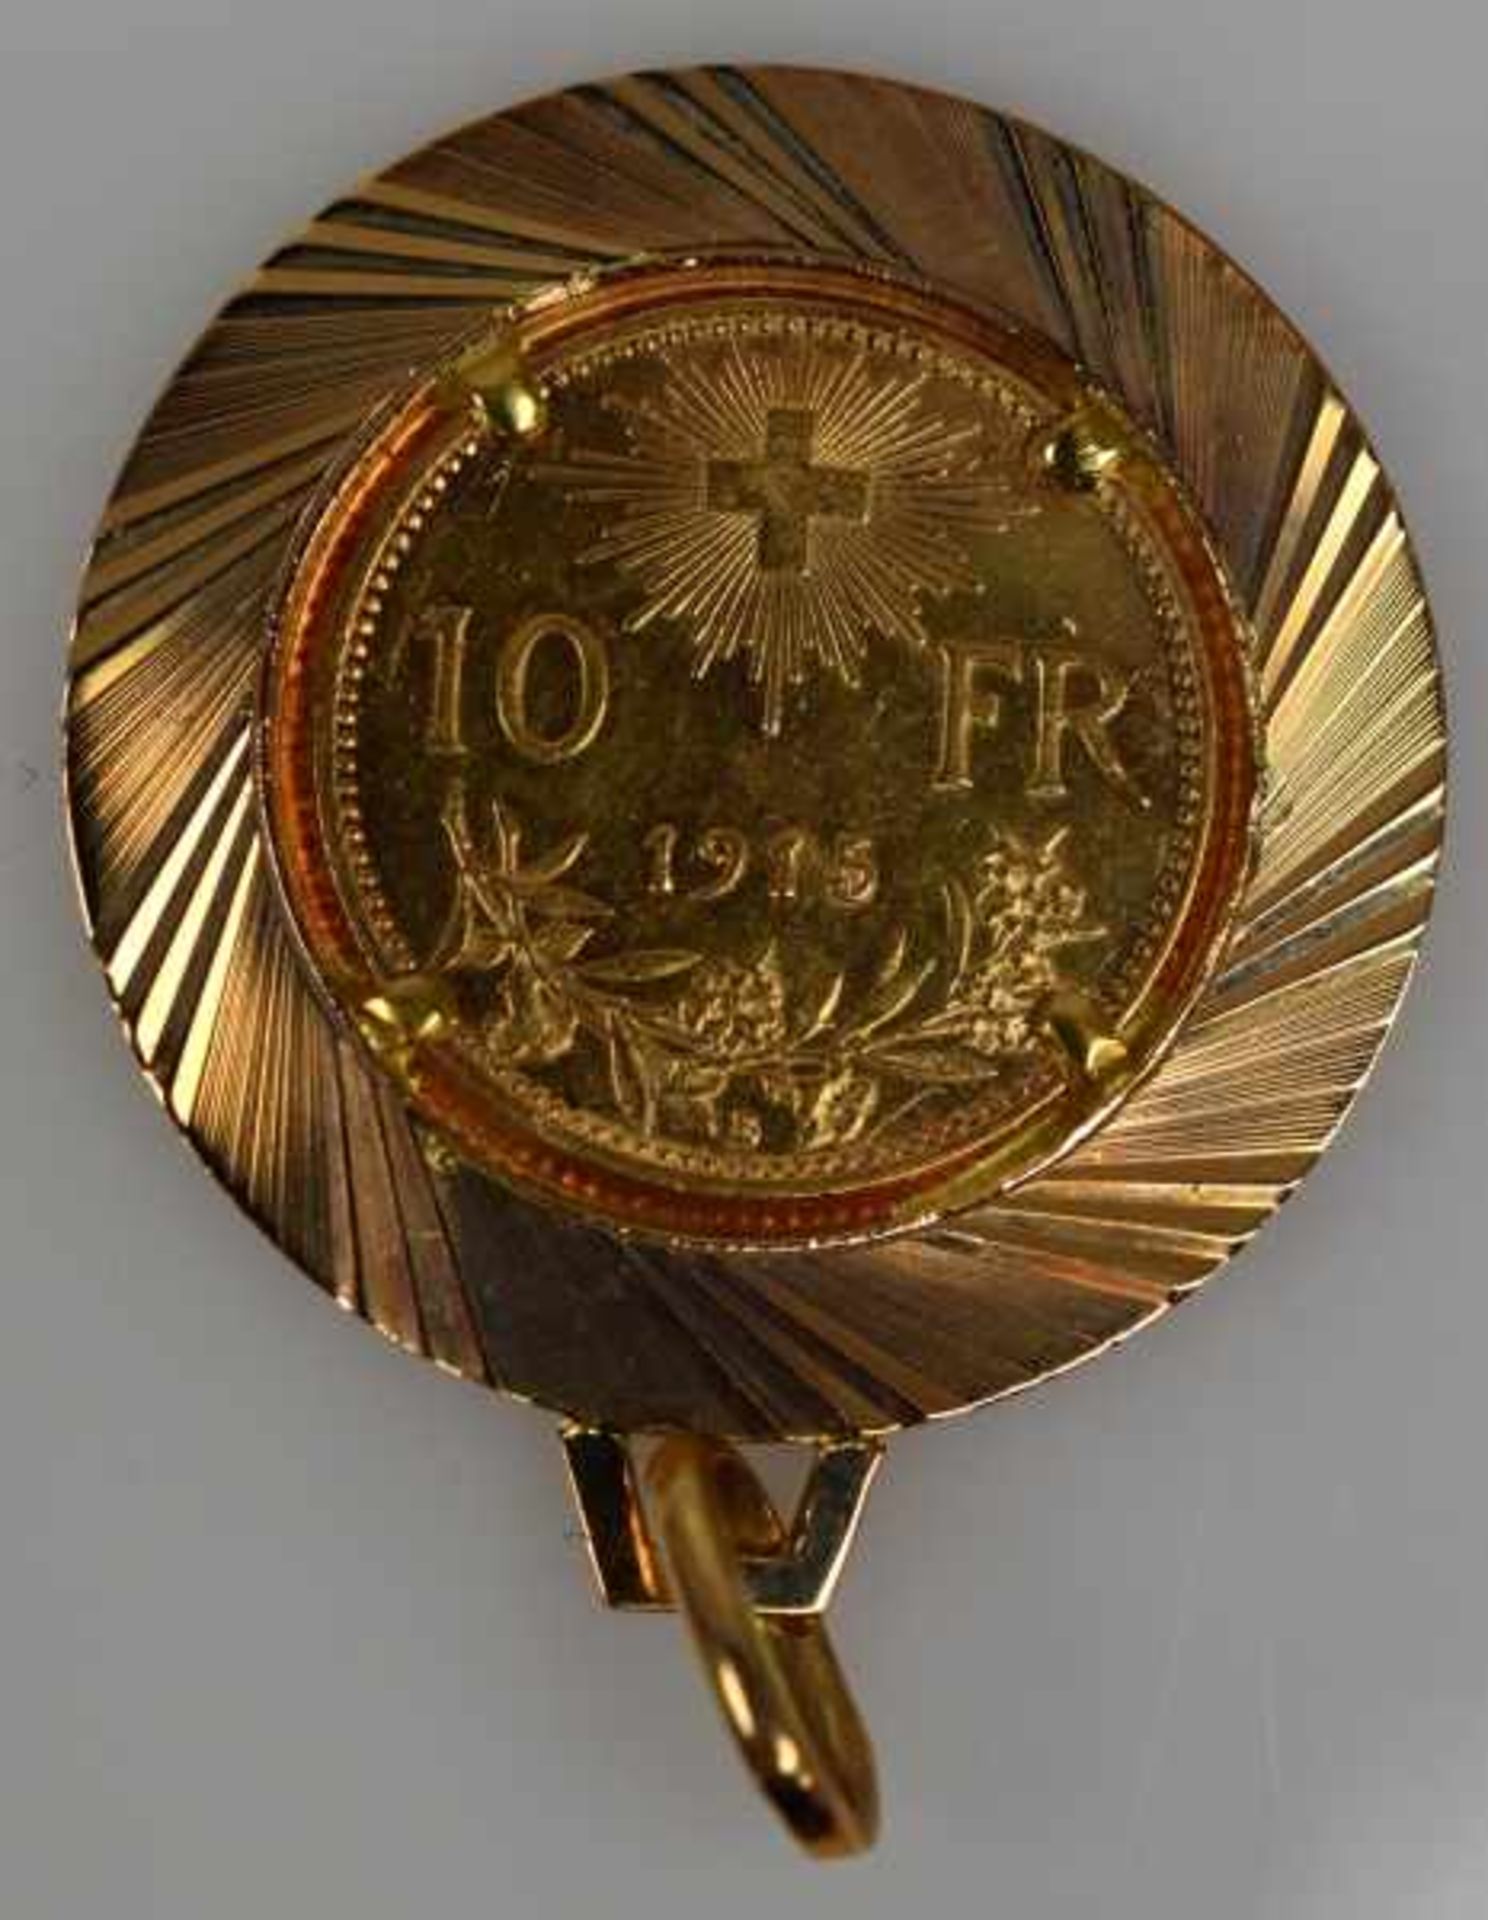 MÜNZEN-LOT 1 Münzanhänger mit Münze 10Fr. Schweiz Nachprägung in Fassung 14ct, 8,3g -1 Goldmünze 200 - Bild 16 aus 17